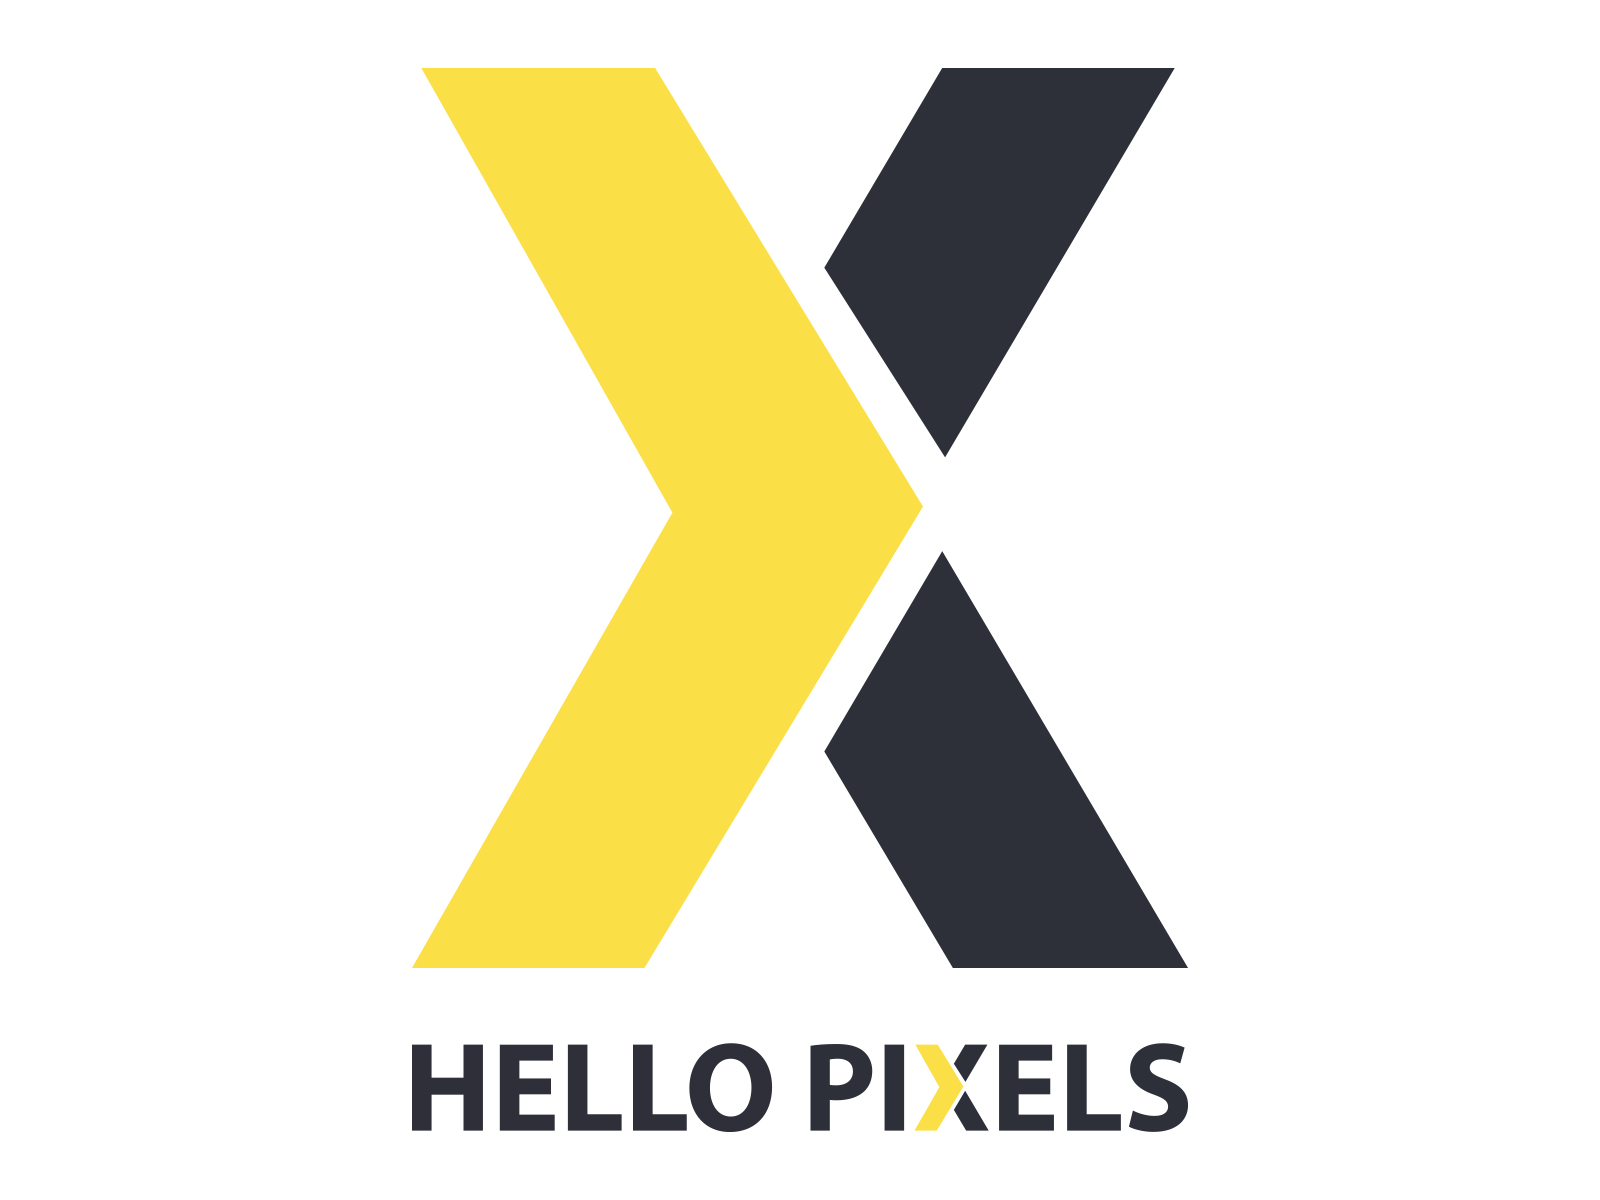 HelloPixels